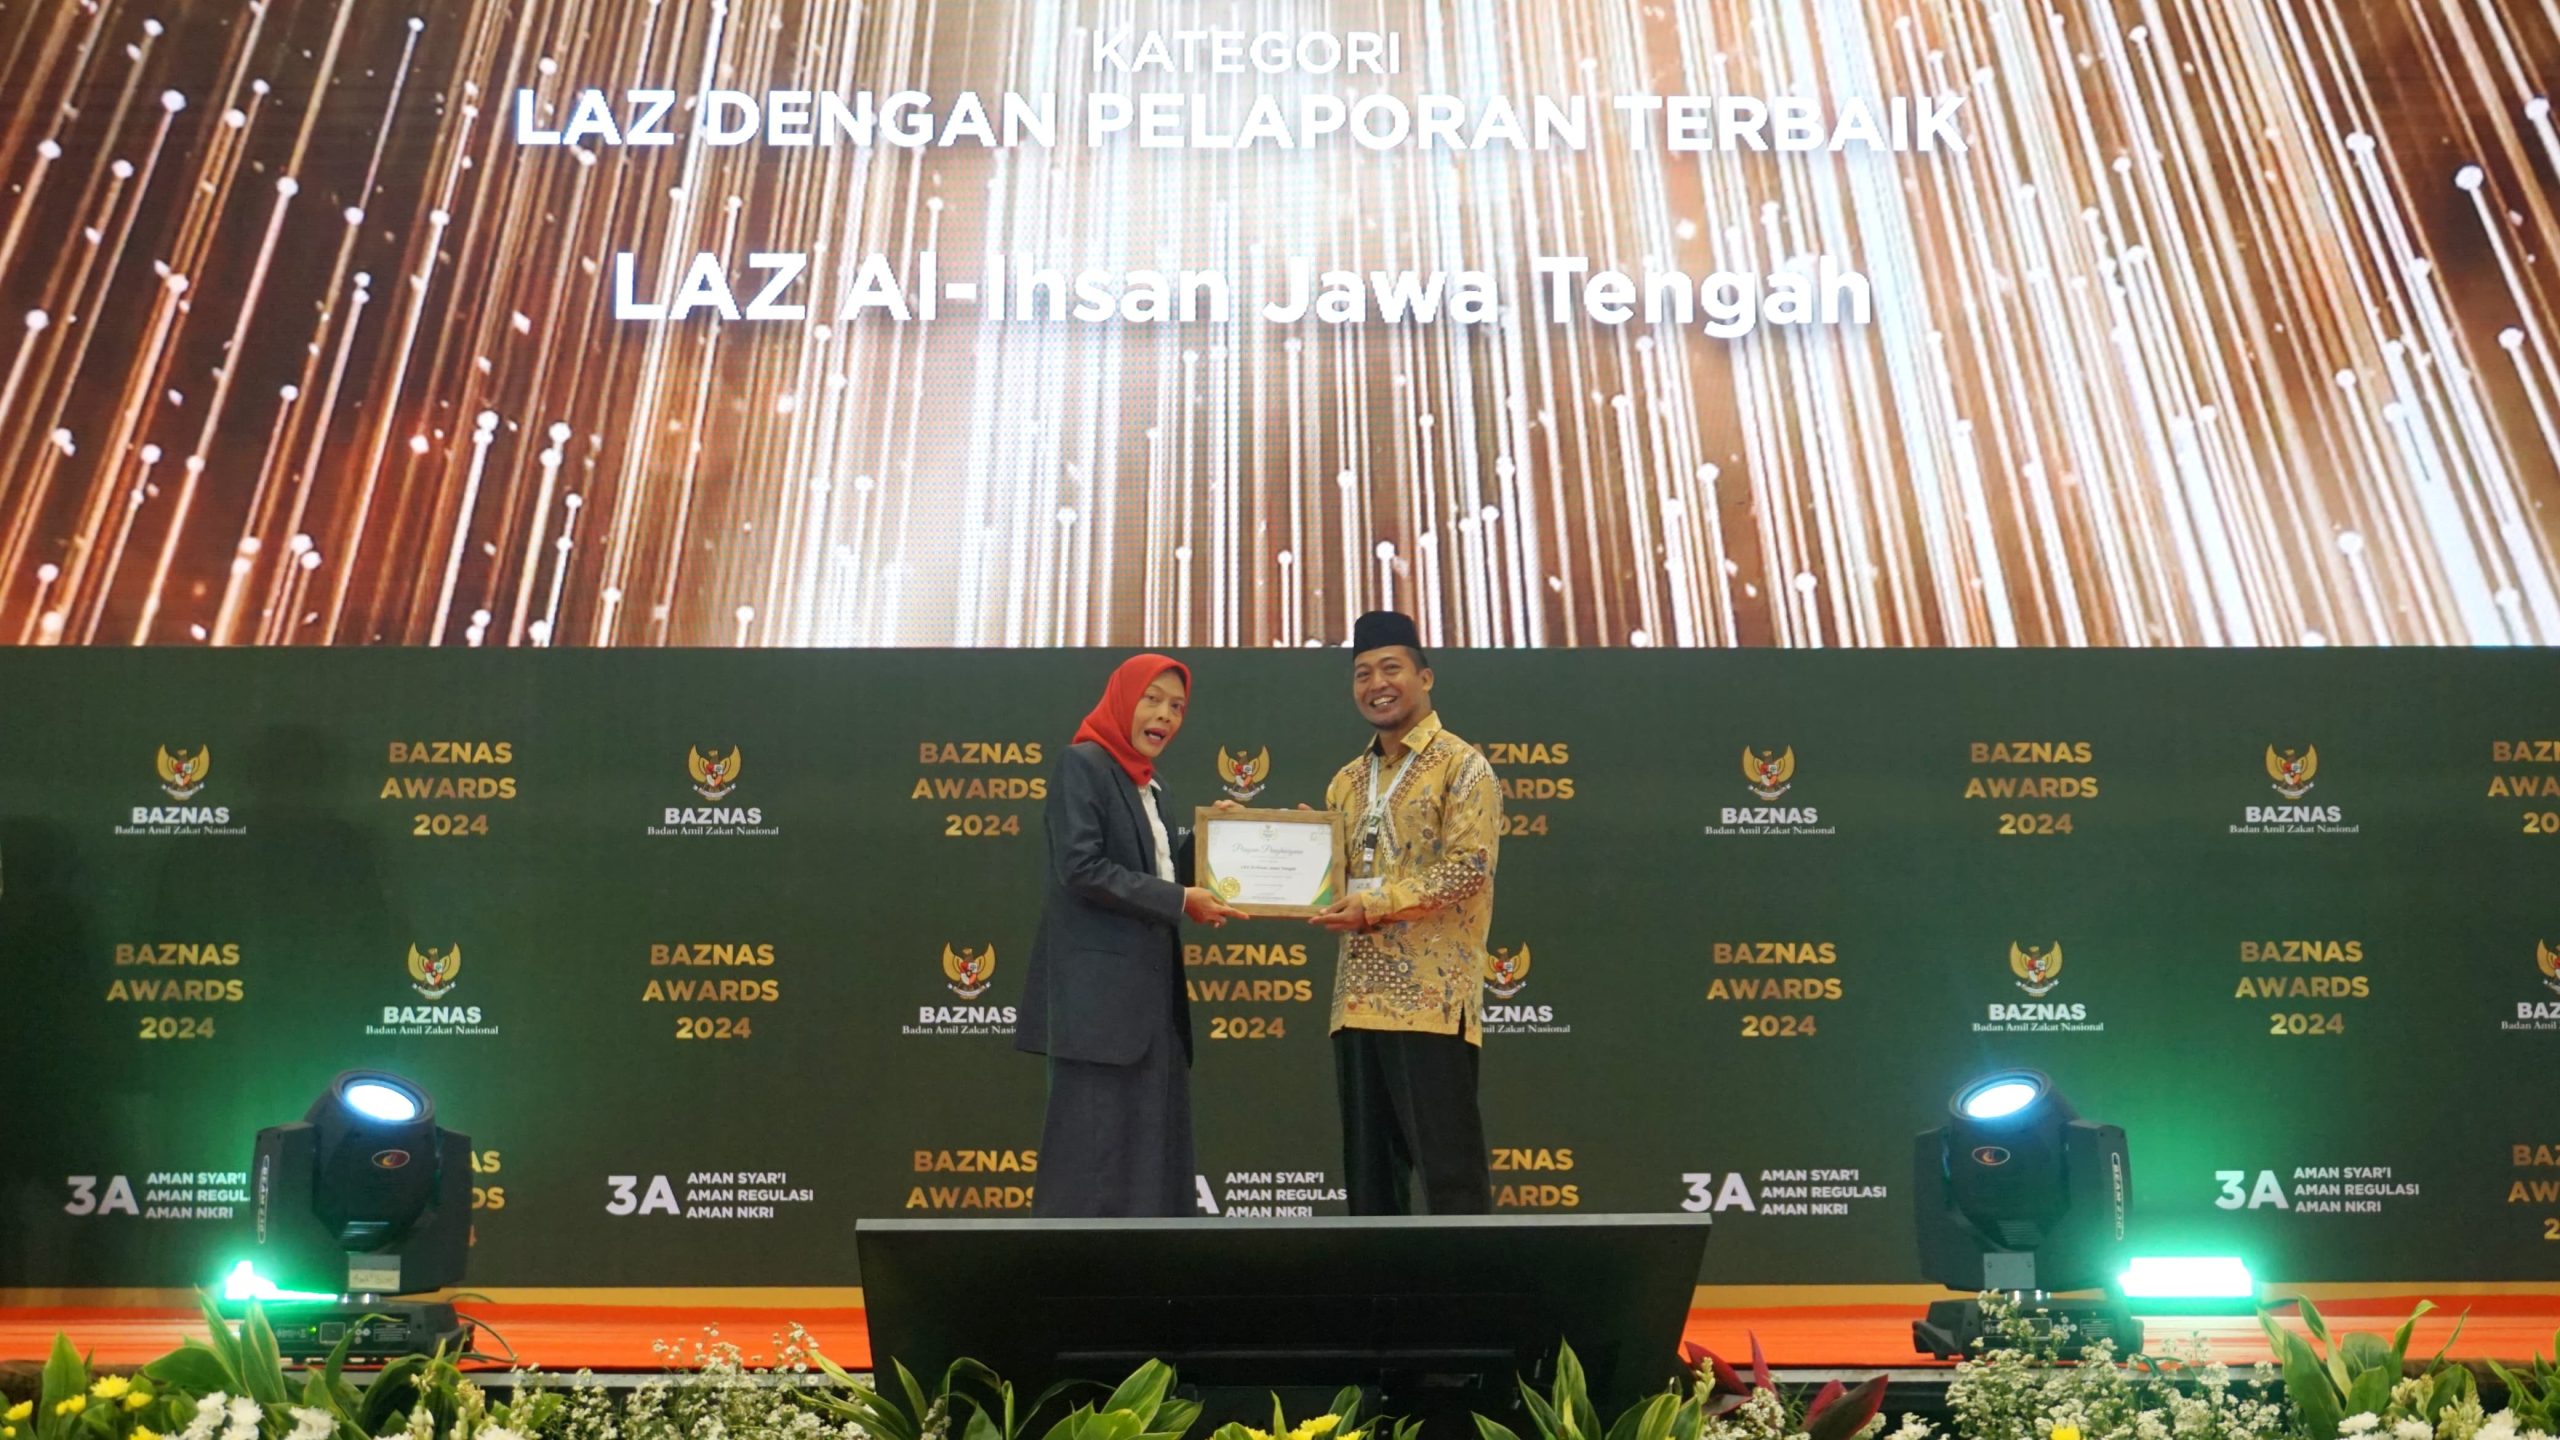 LAZiS Jateng Raih Penghargaan Pelaporan Terbaik LAZ Provinsi BAZNAS AWARDS 2024